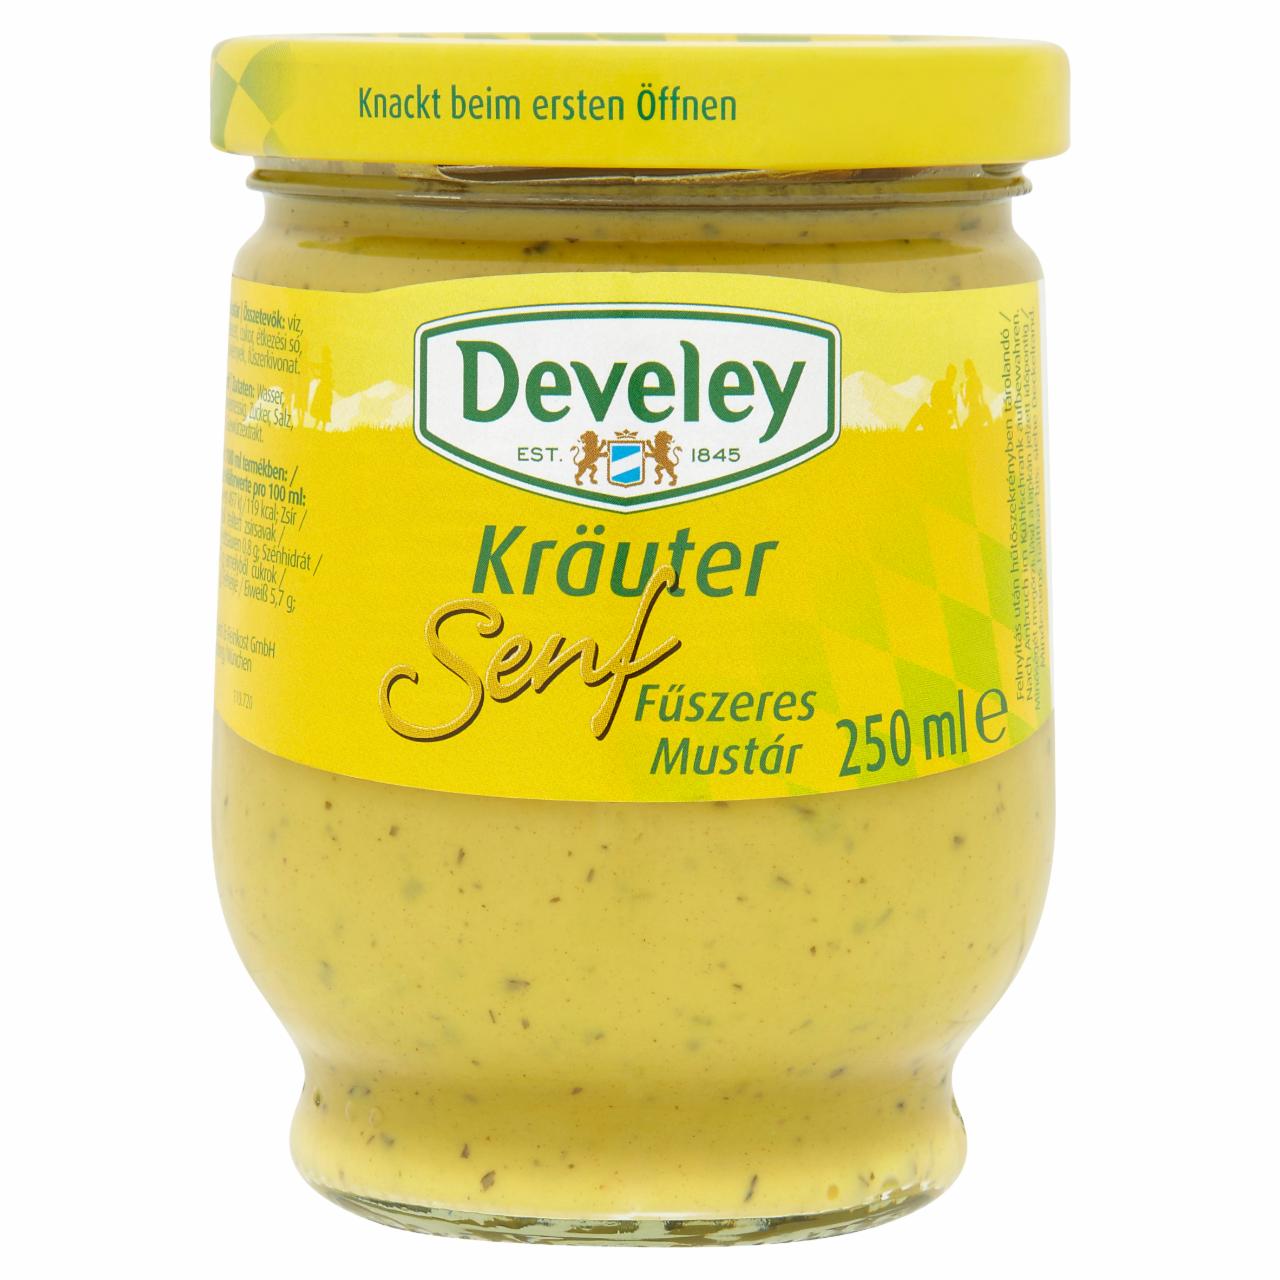 Képek - Develey fűszeres mustár 250 ml